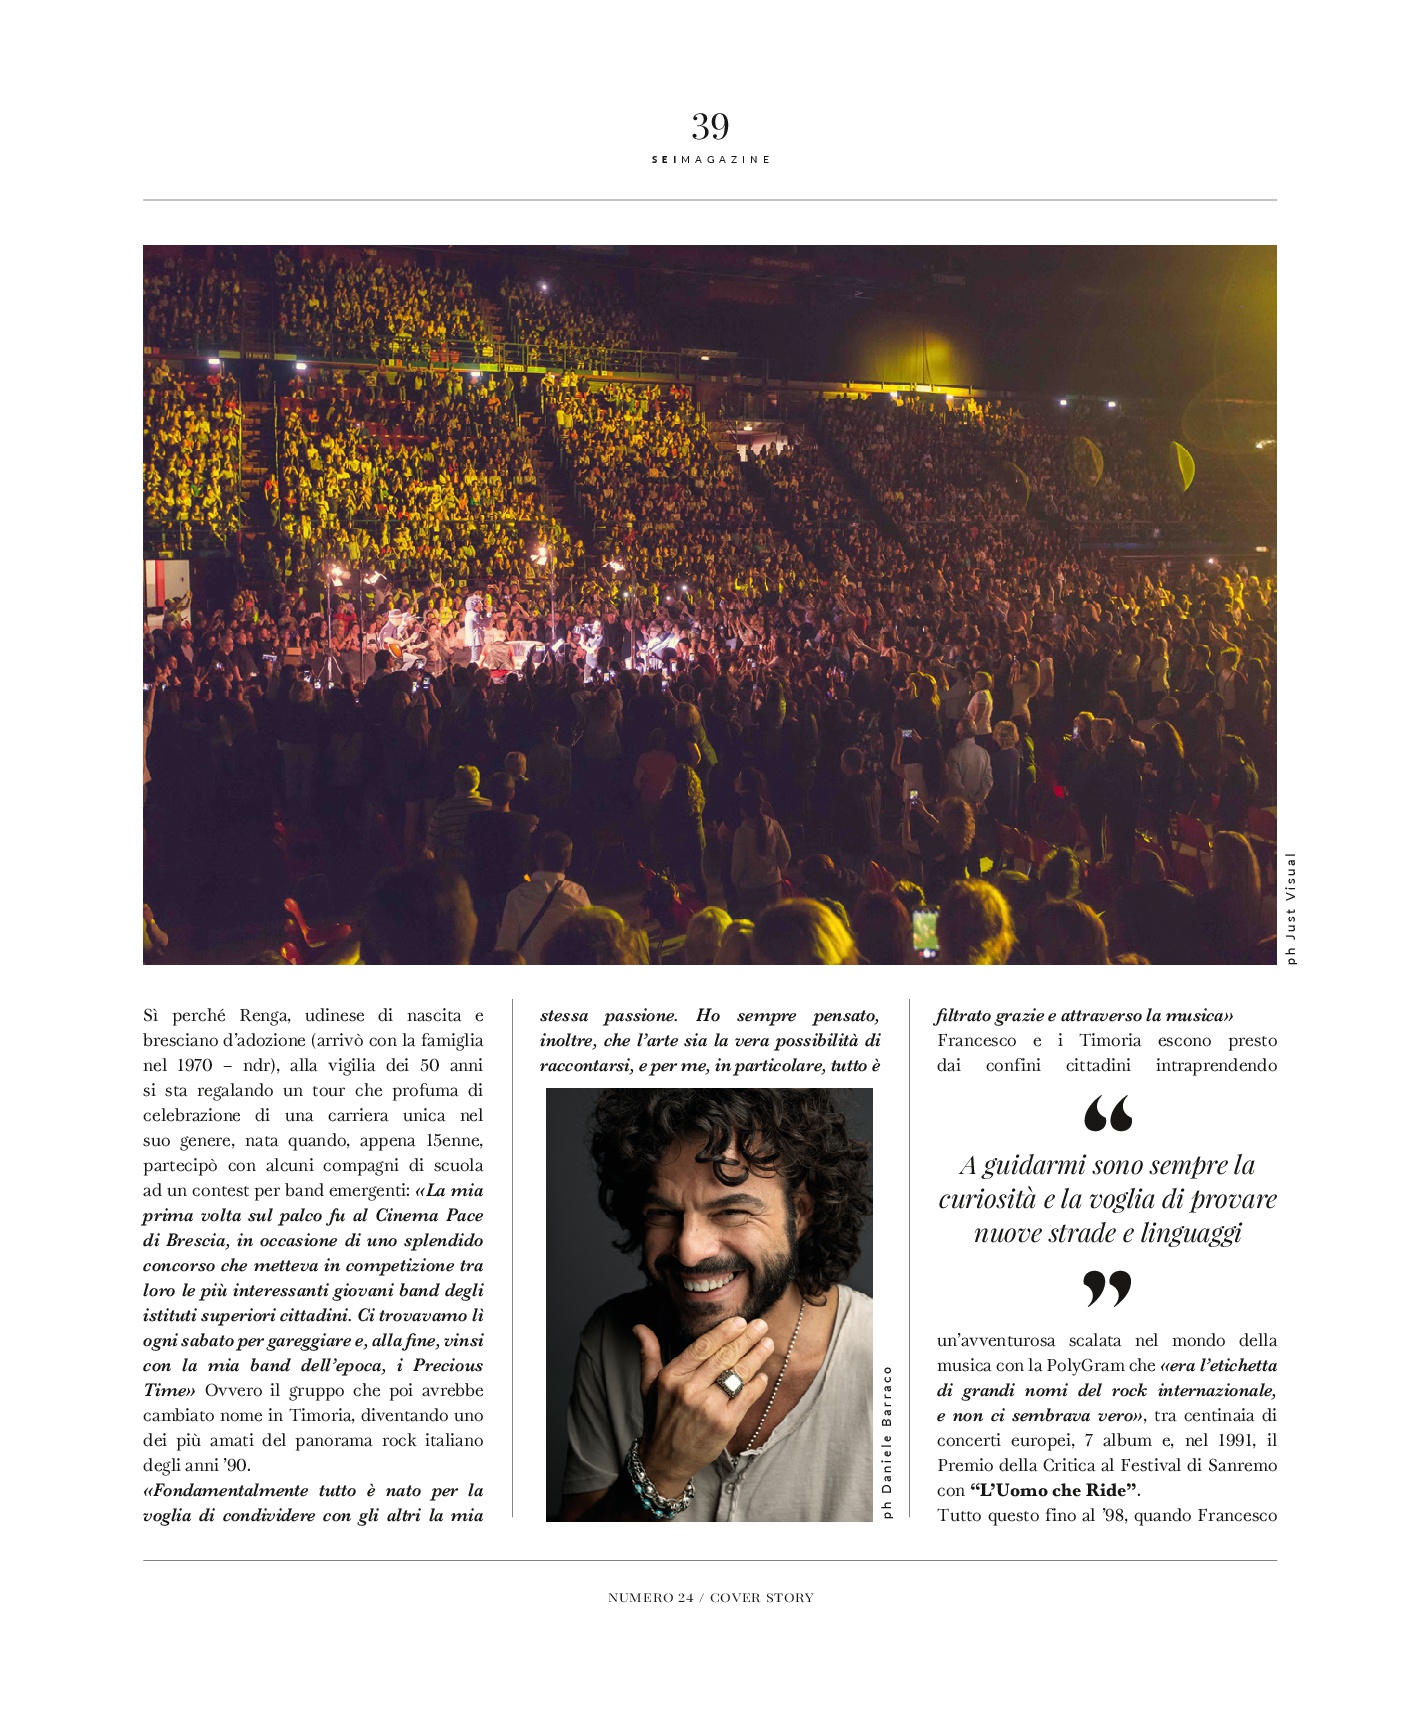 intervista a Francesco Renga sei magazine cover story scriverò il tuo nome tour ilaria rebecchi